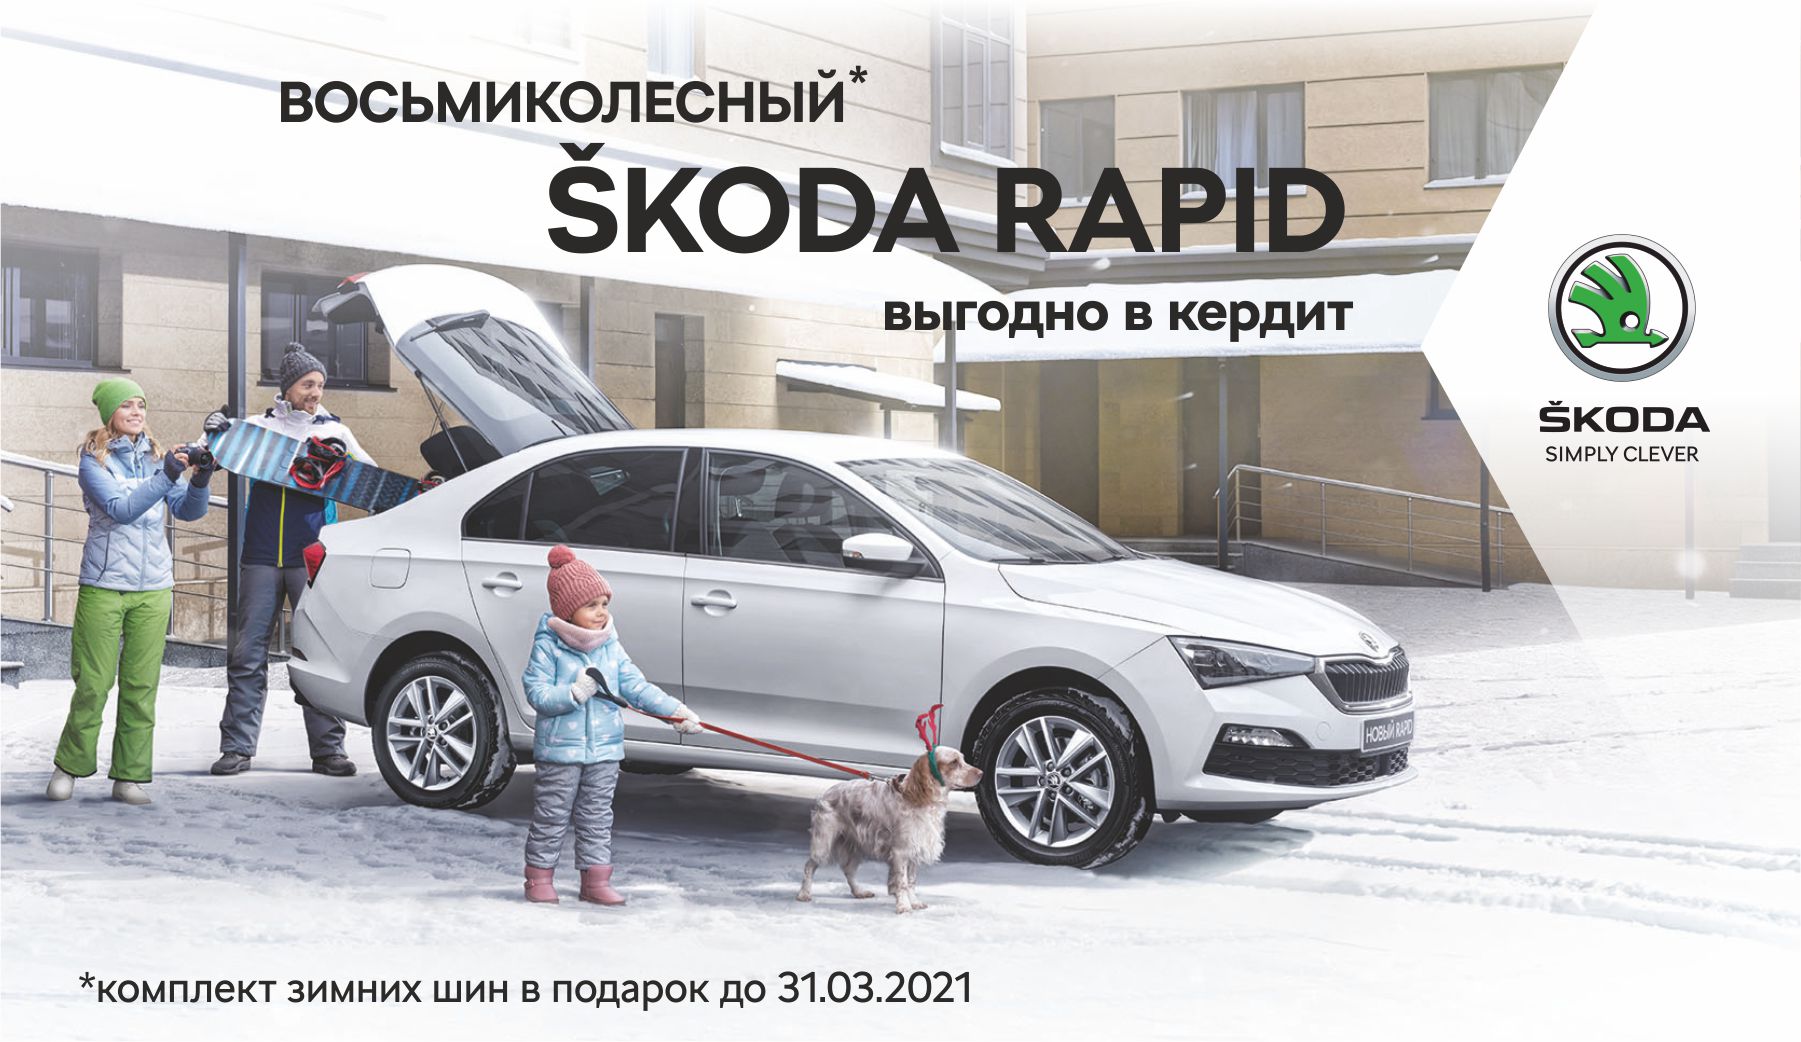 До конца марта официальный дилер ŠKODA в Красноярске — Медведь-Восток — дарит комплект зимних шин при покупке авто